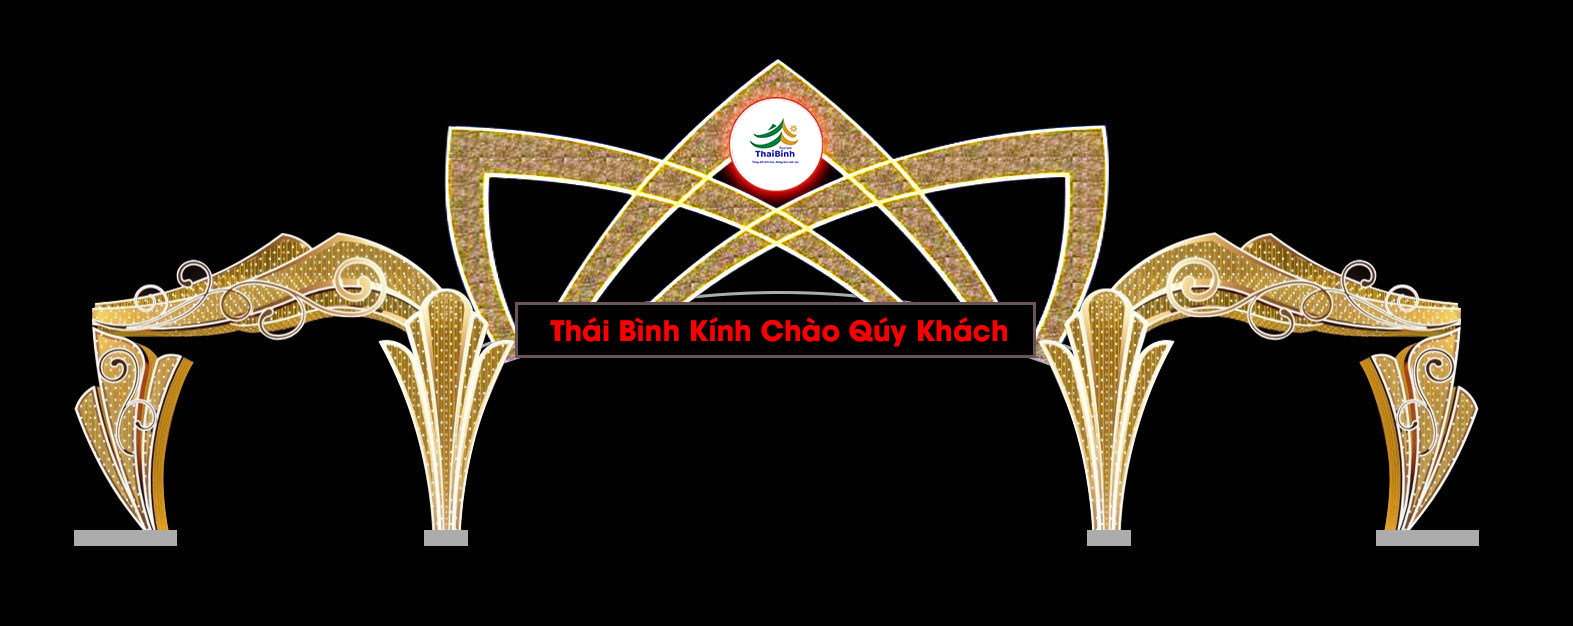 Thiết kế trang trí cổng chào tại tỉnh Thái Bình với khẩu hiệu chào đón